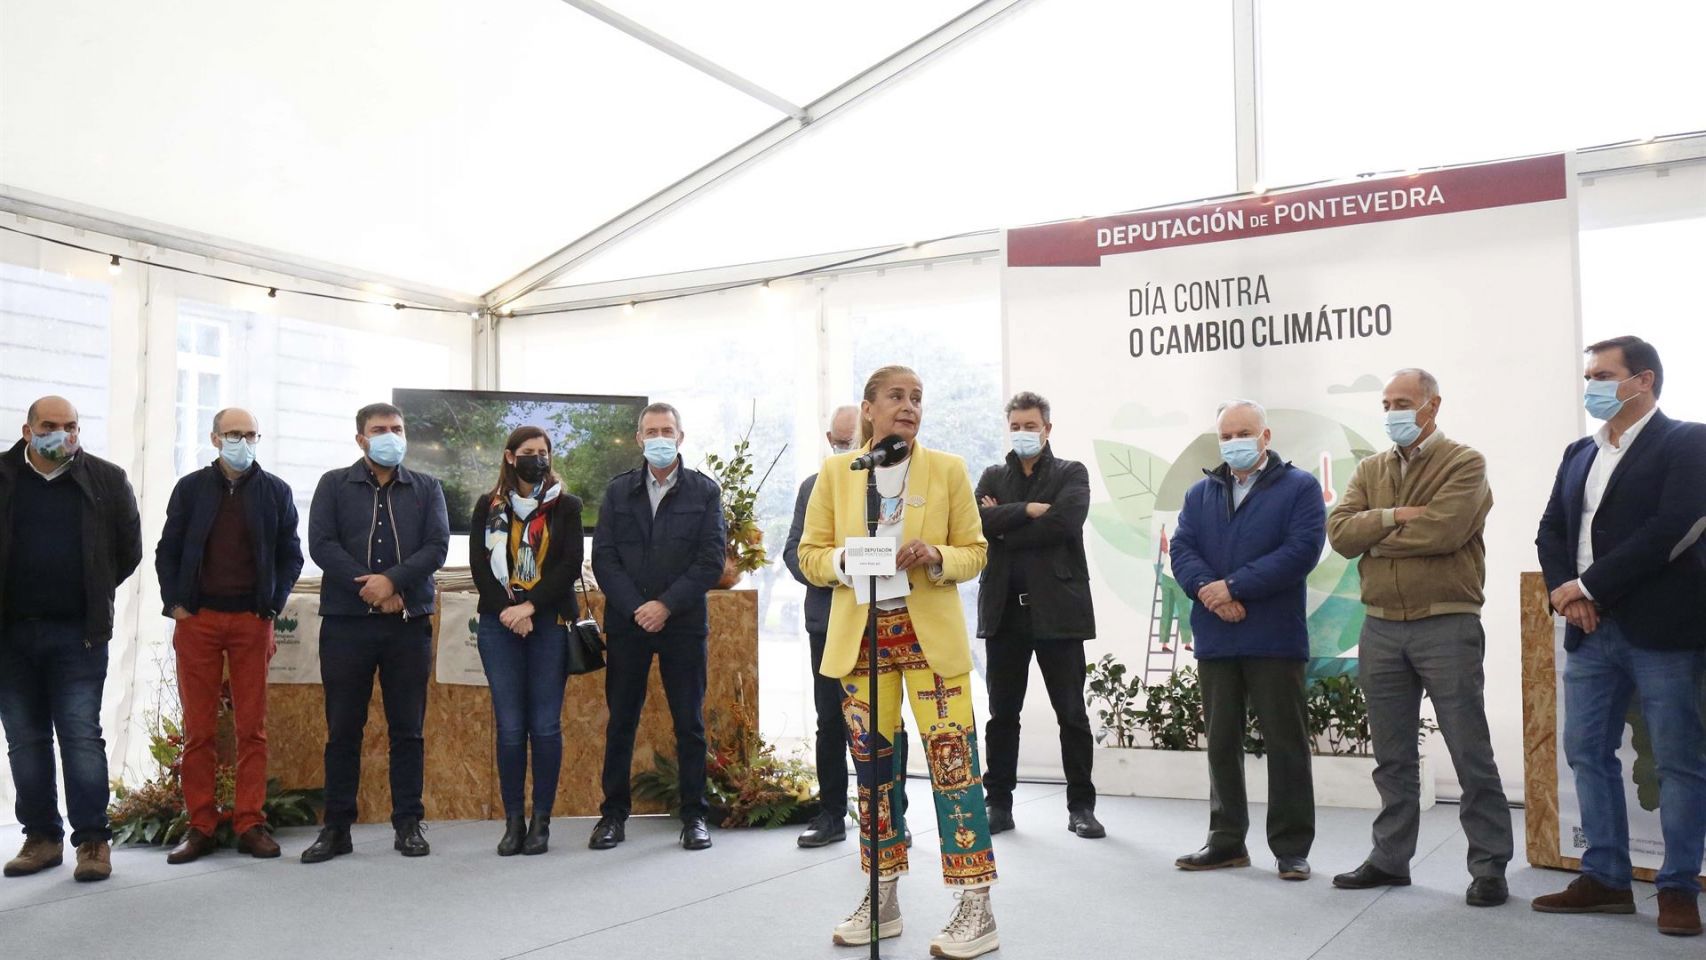 Acto de la Diputación de Pontevedra en el marco de la lucha contra el Cambio Climático